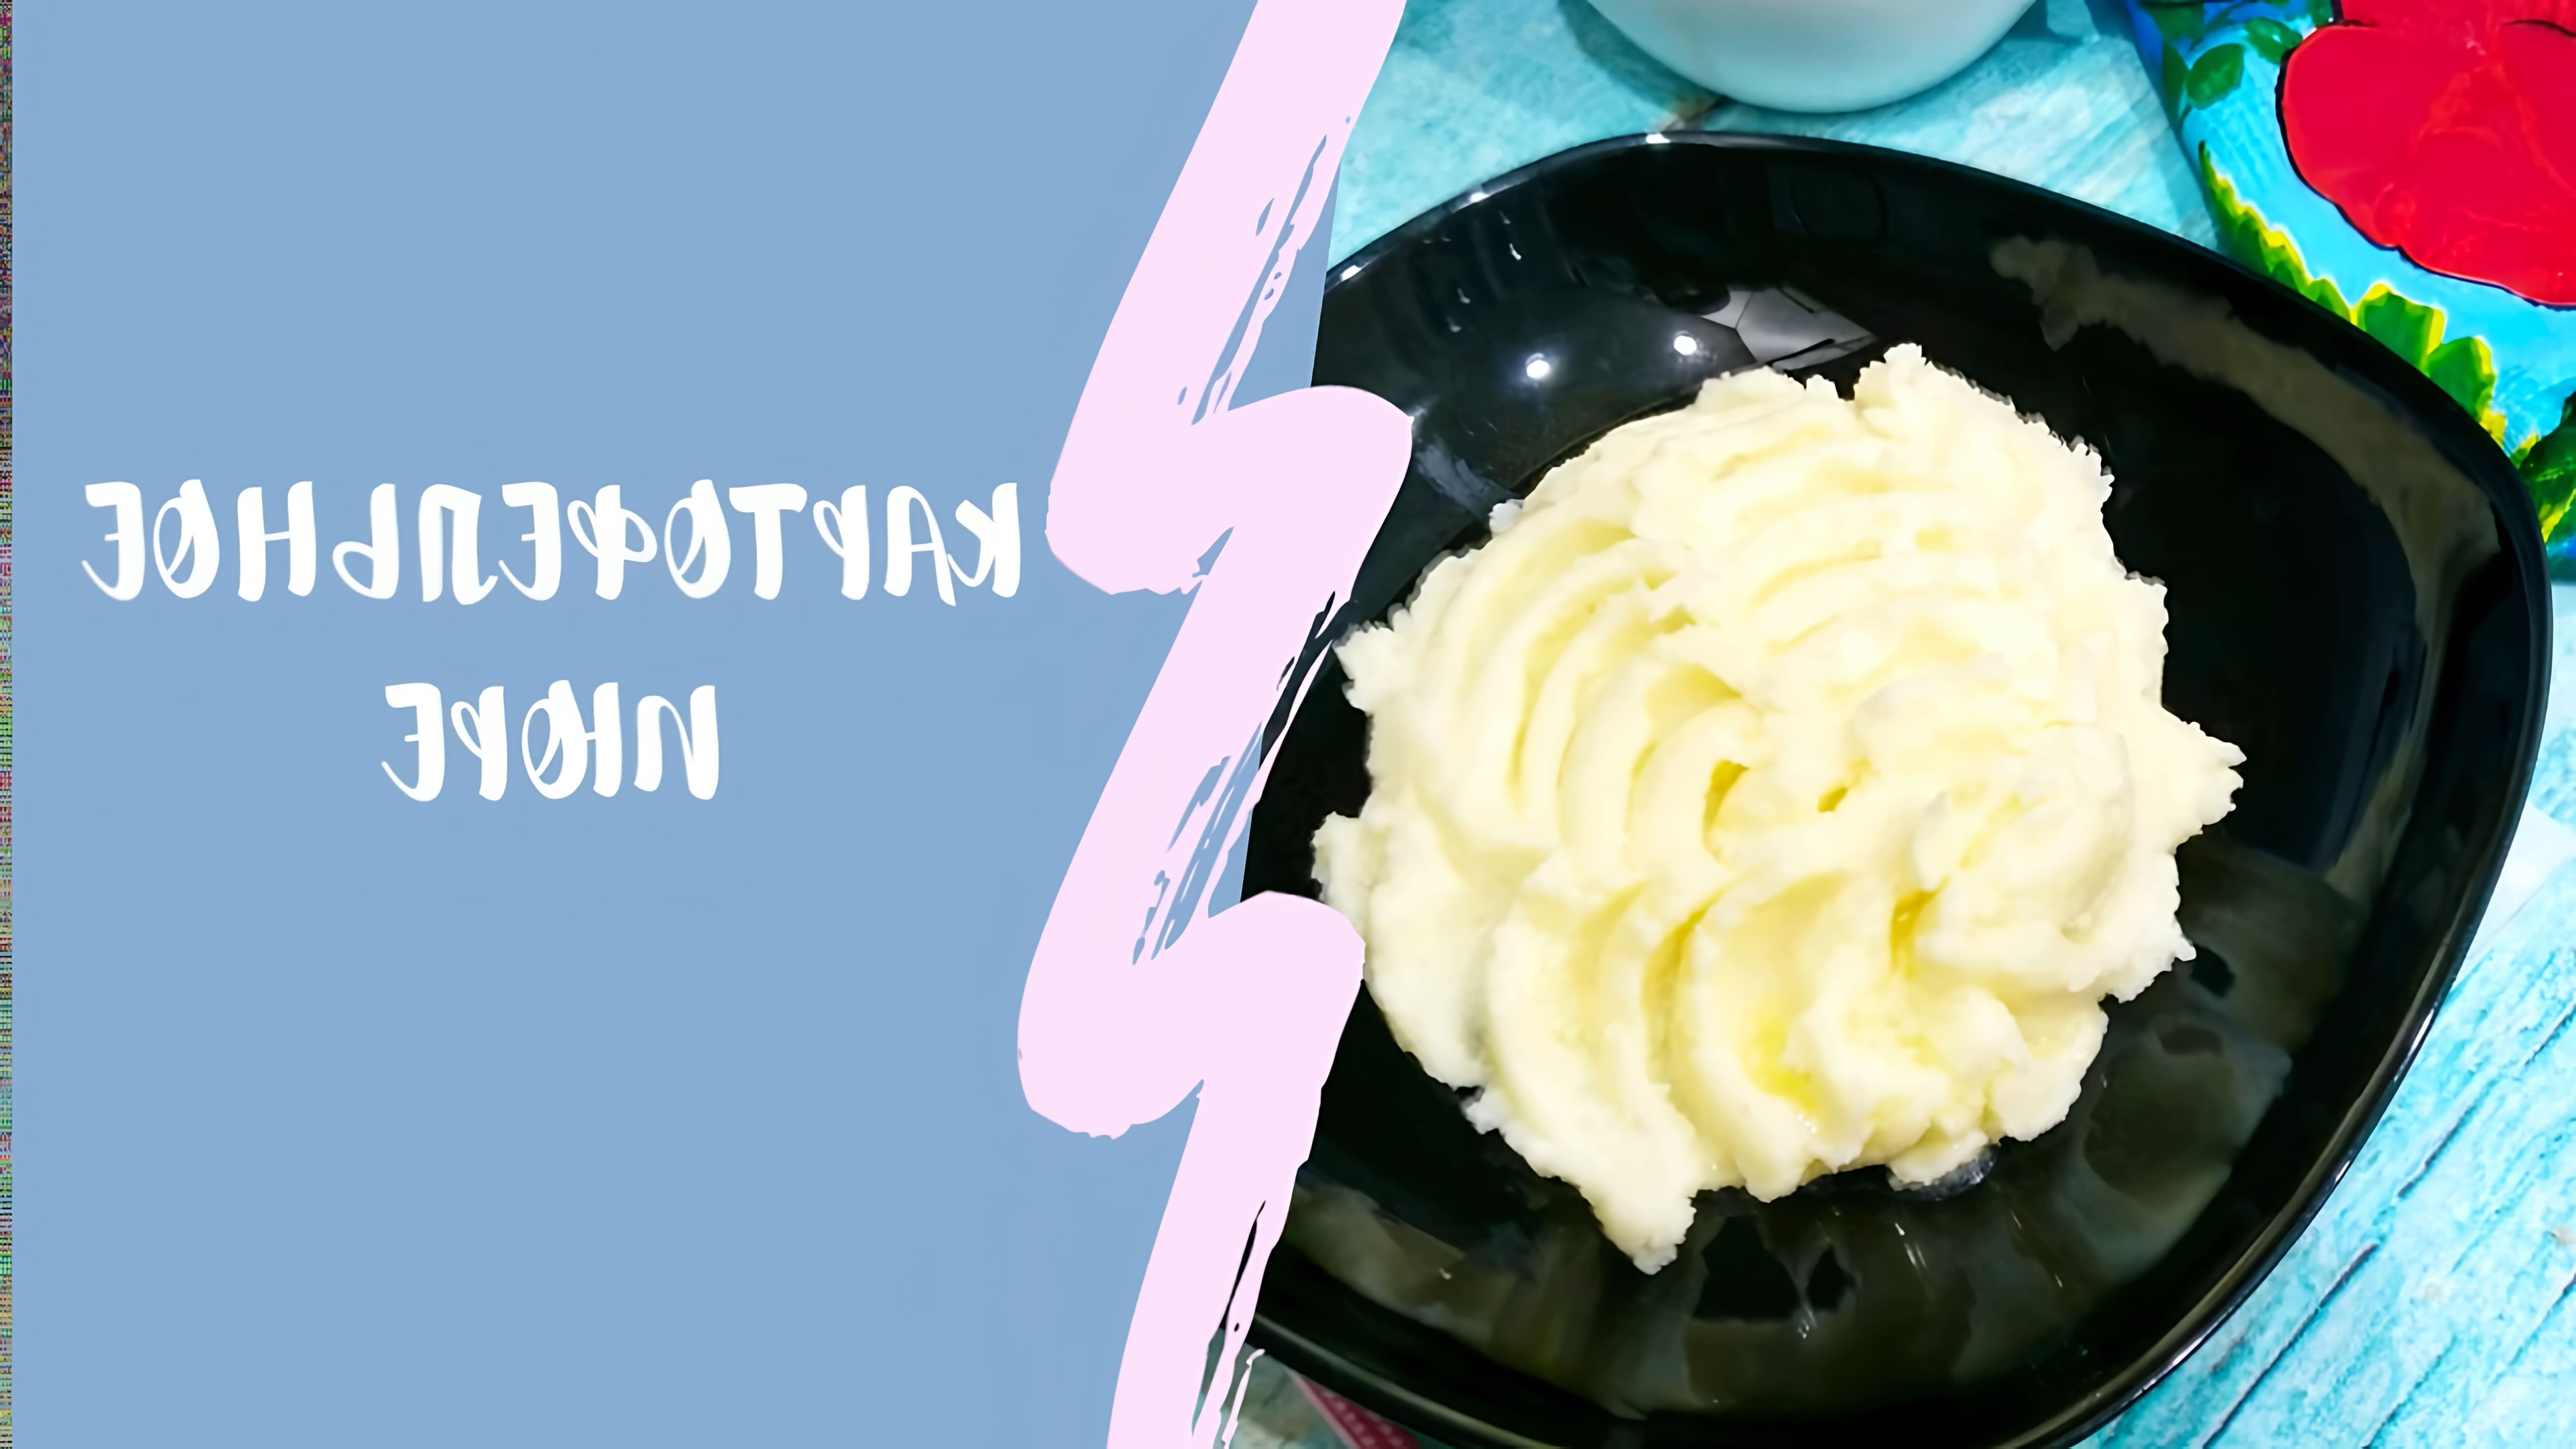 В этом видео-ролике будет показан очень простой и вкусный рецепт приготовления картофельного пюре на молоке со сливочным маслом